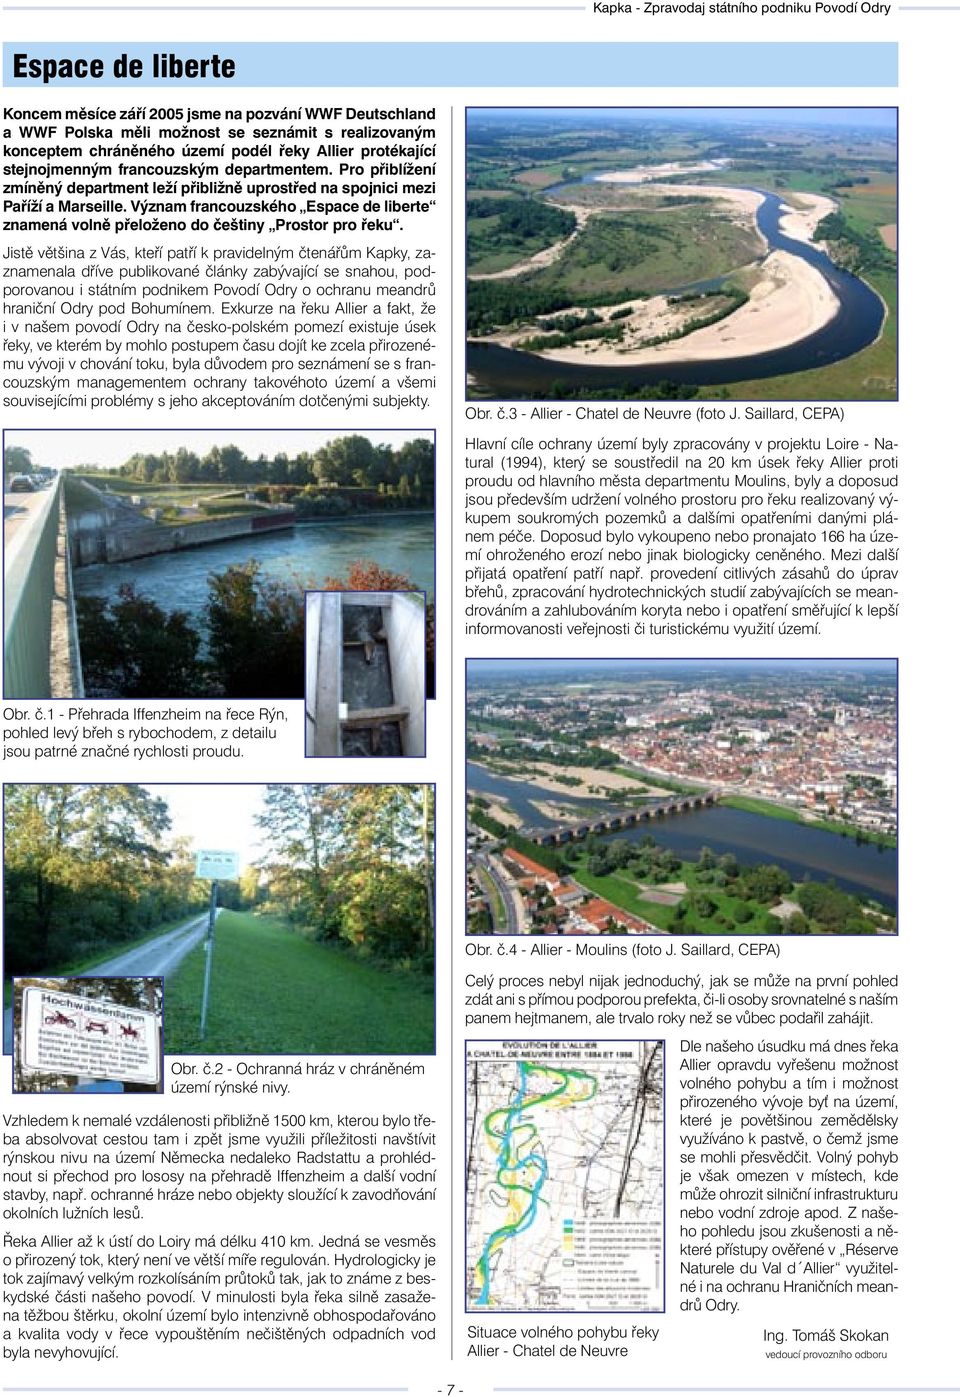 Význam francouzského Espace de liberte znamená volně přeloženo do češtiny Prostor pro řeku.